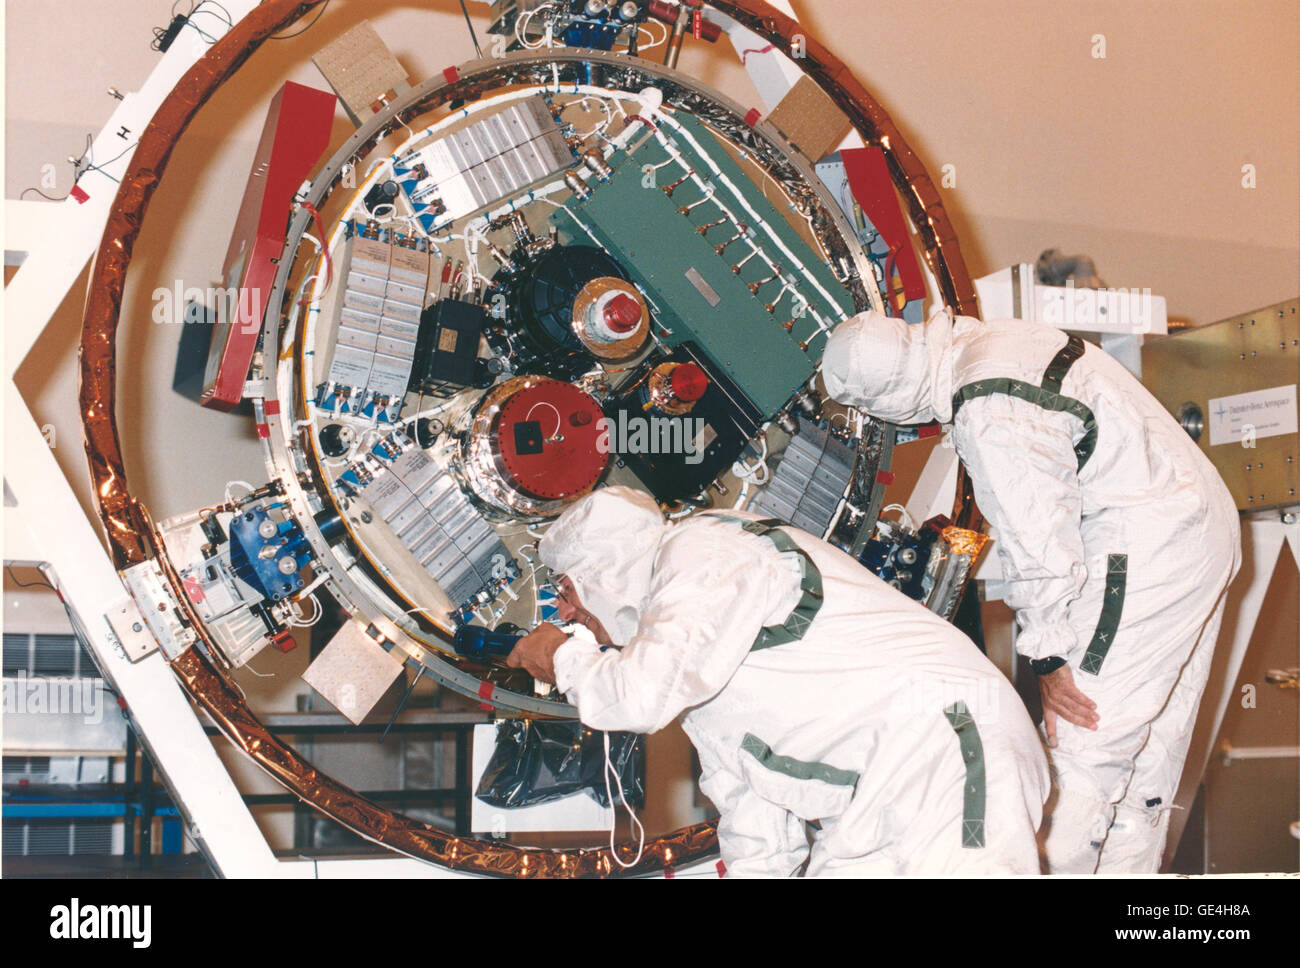 (September 10, 1997) Jet Propulsion Laboratory (JPL) Arbeitnehmer untersuchen die Sonde Huygens nach der Entnahme aus der Raumsonde Cassini in der Nutzlast gefährliche Service Facility (PHSF) am KSC. Das Raumschiff wurde an die PHSF zurückgegeben, nachdem Schäden an die Wärmedämmung von einem abnorm hohen Informationsfluss klimatisierte Luft innen Huygens entdeckt wurde. Des Schadens erforderlichen Techniker überprüfen das Innere der Sonde, die Isolierung zu reparieren und reinigen die Instrumente.   Nach der Rückkehr aus der PHSF zur Startrampe 40 auf Cape Canaveral Air Station, Cassini/Huygens erfolgreich gestartet im Oktober 1997 eine Stockfoto